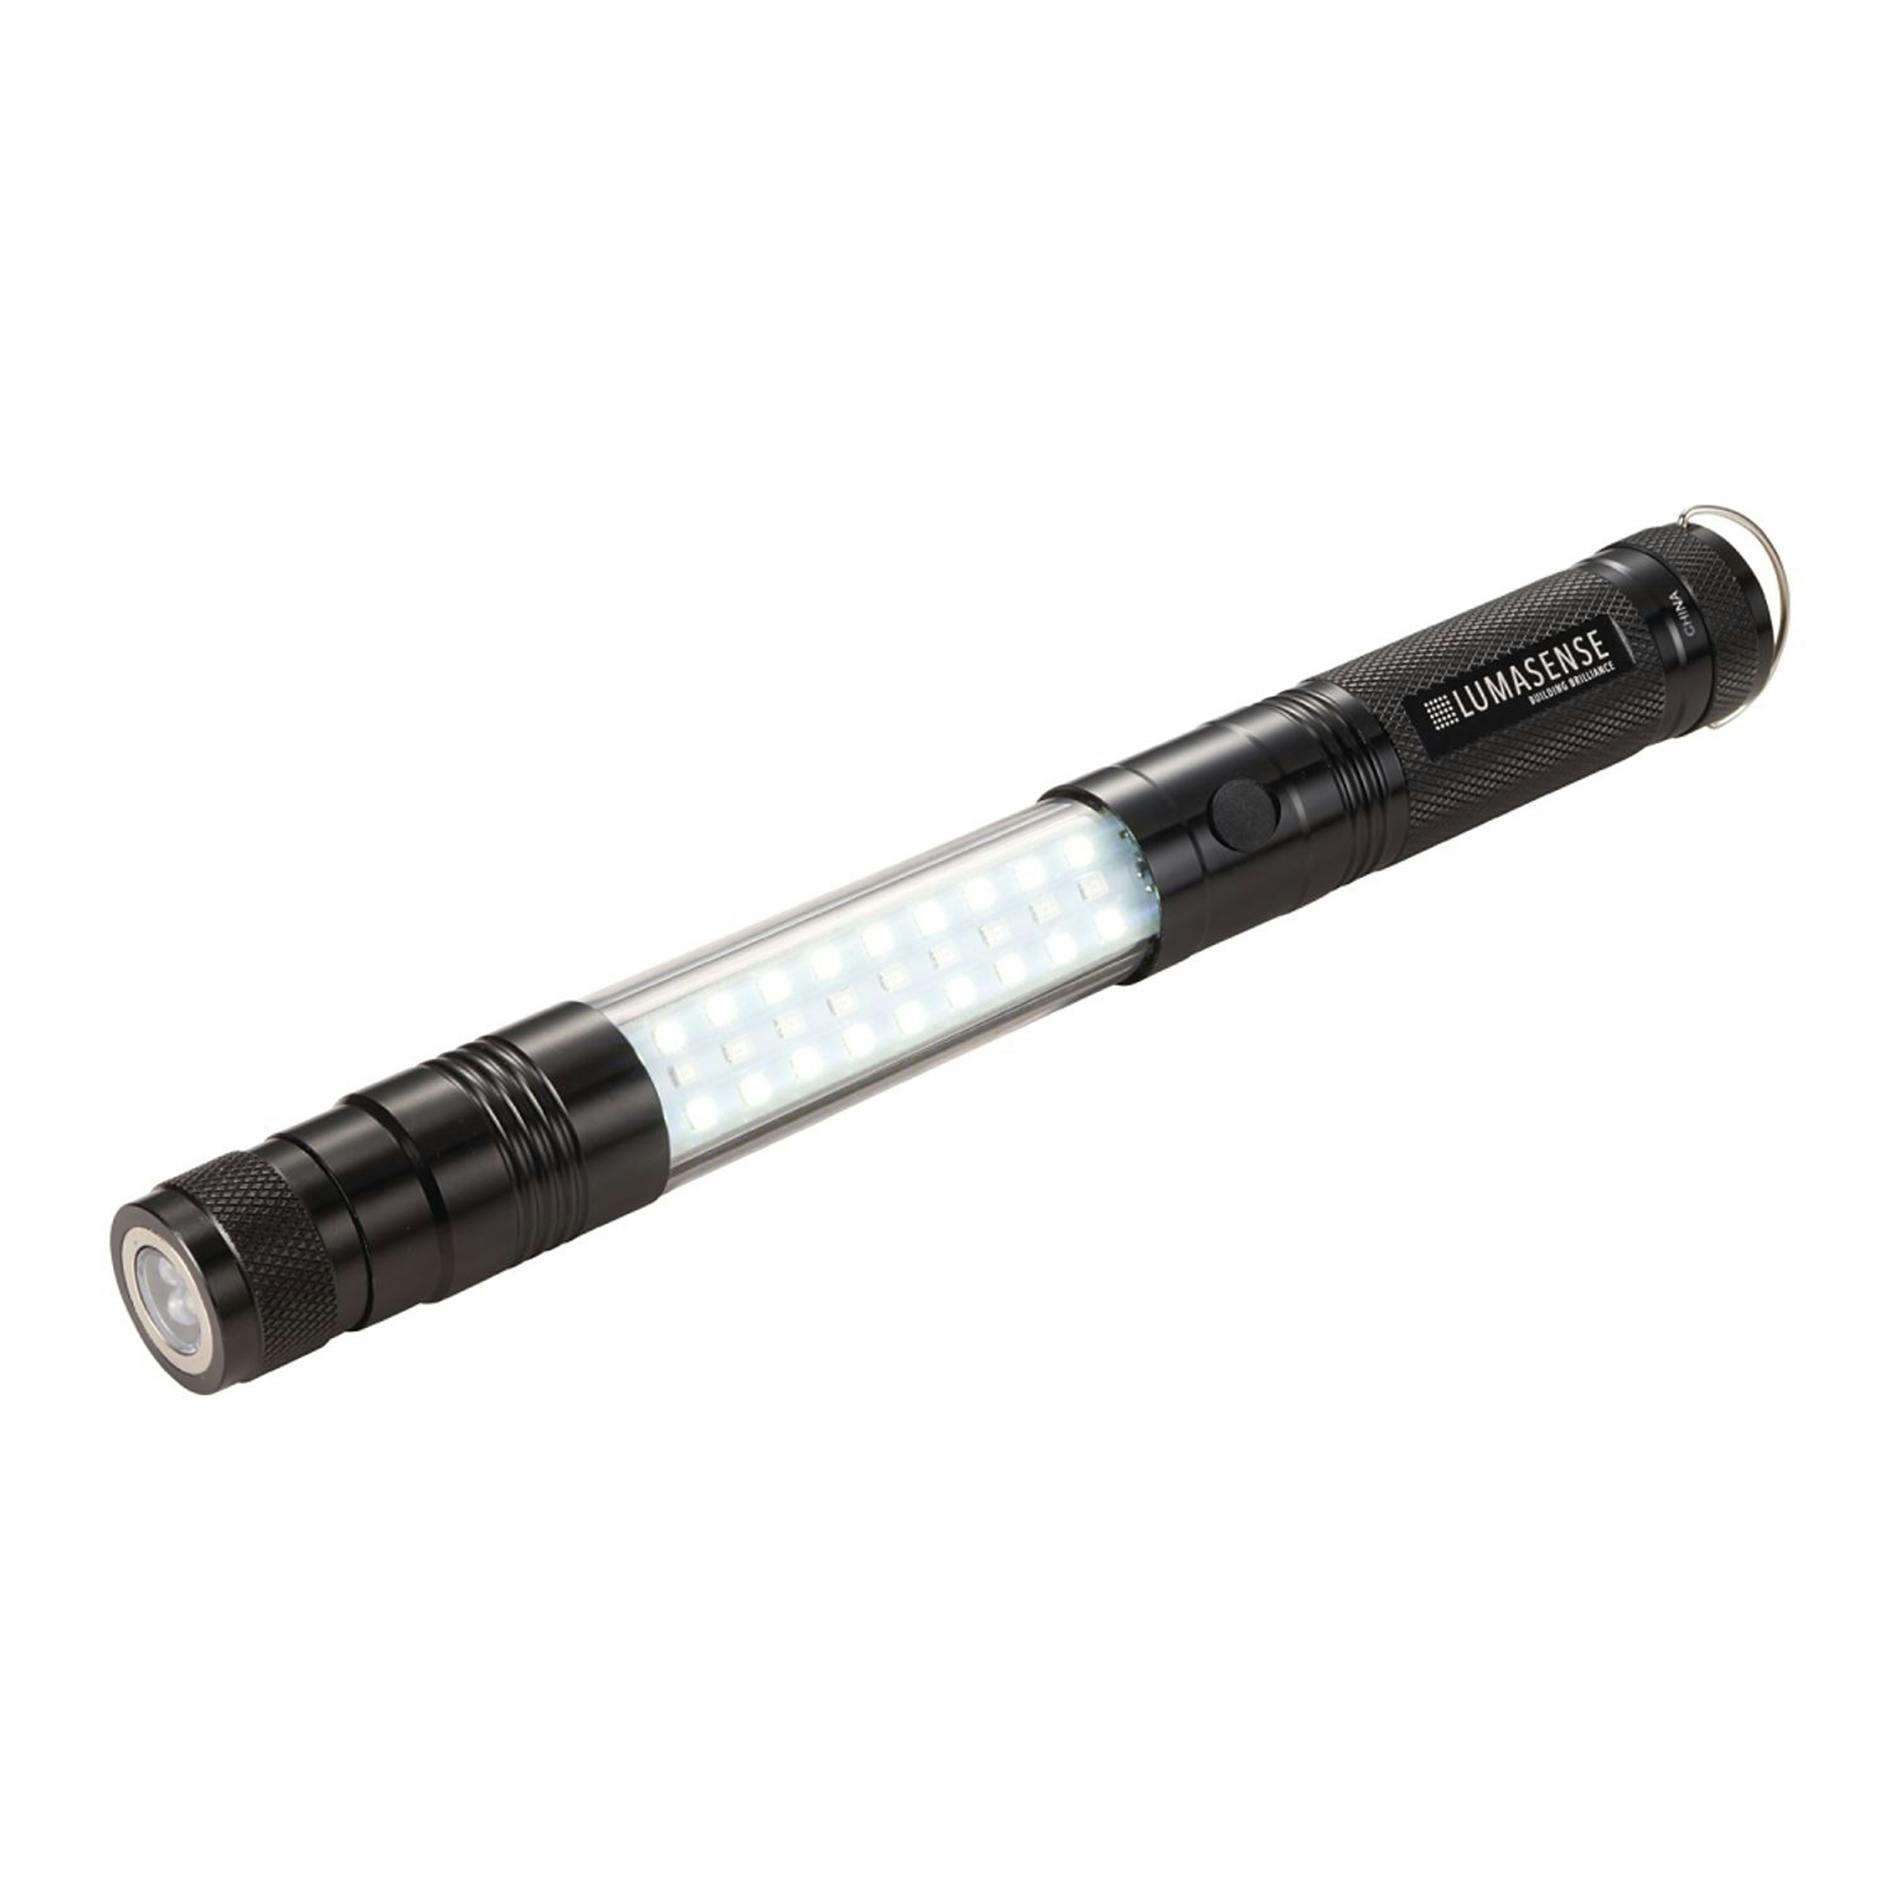 Telescopic Magnetic COB LED Flashlight w/Sidelight - additional Image 1